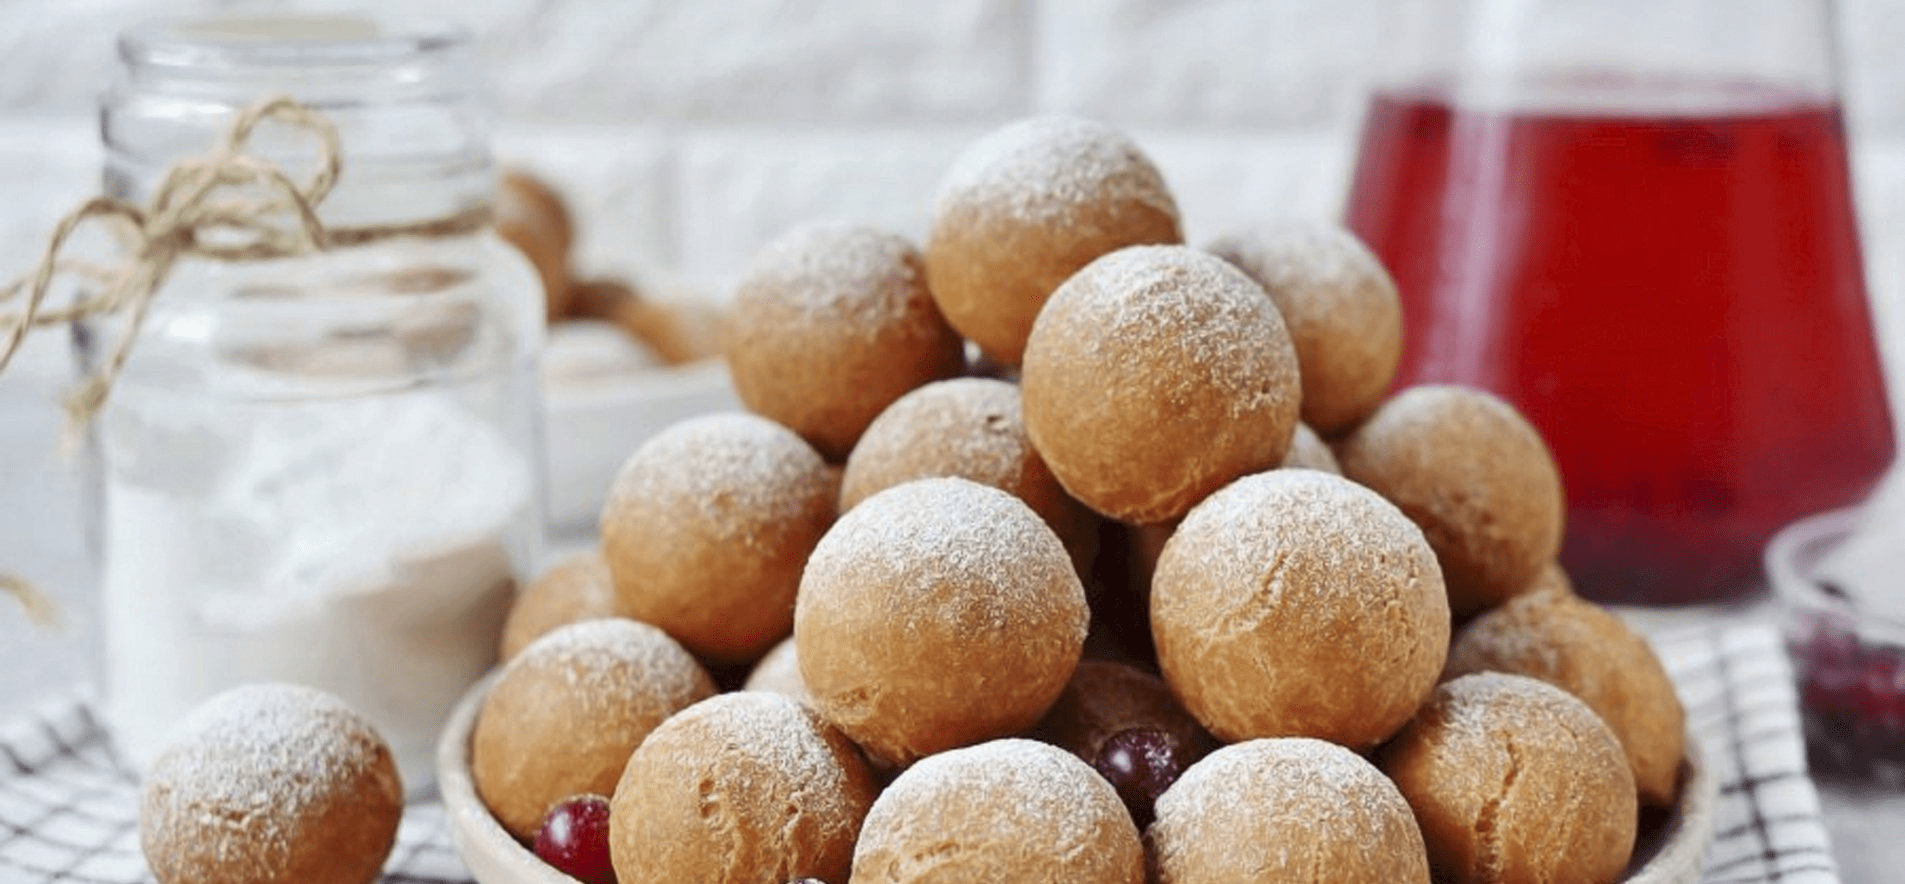 Як зробити смачні та поживні солодкі рисові кульки: рецепт від нутриціолога ➤ Prozoro.net.ua